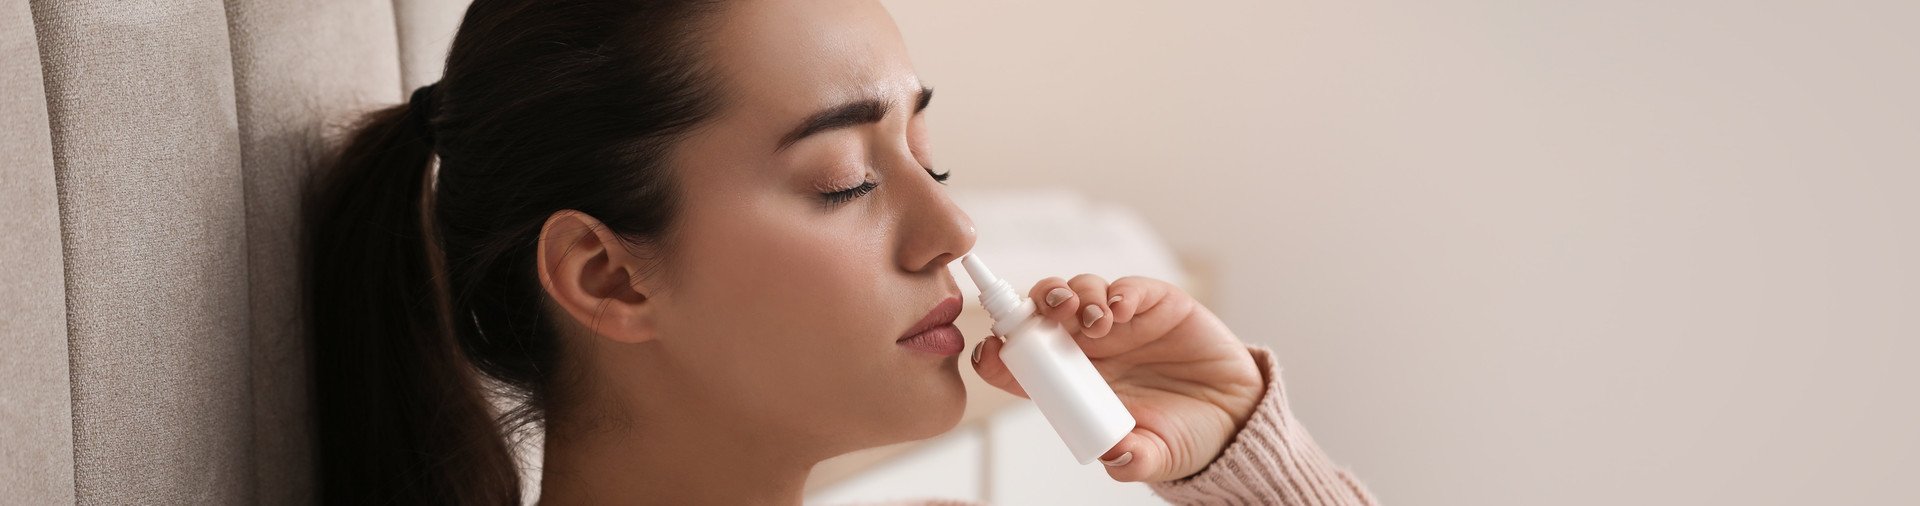 Un spray nasal contre les allergies est appliqué par vaporisations dans le nez